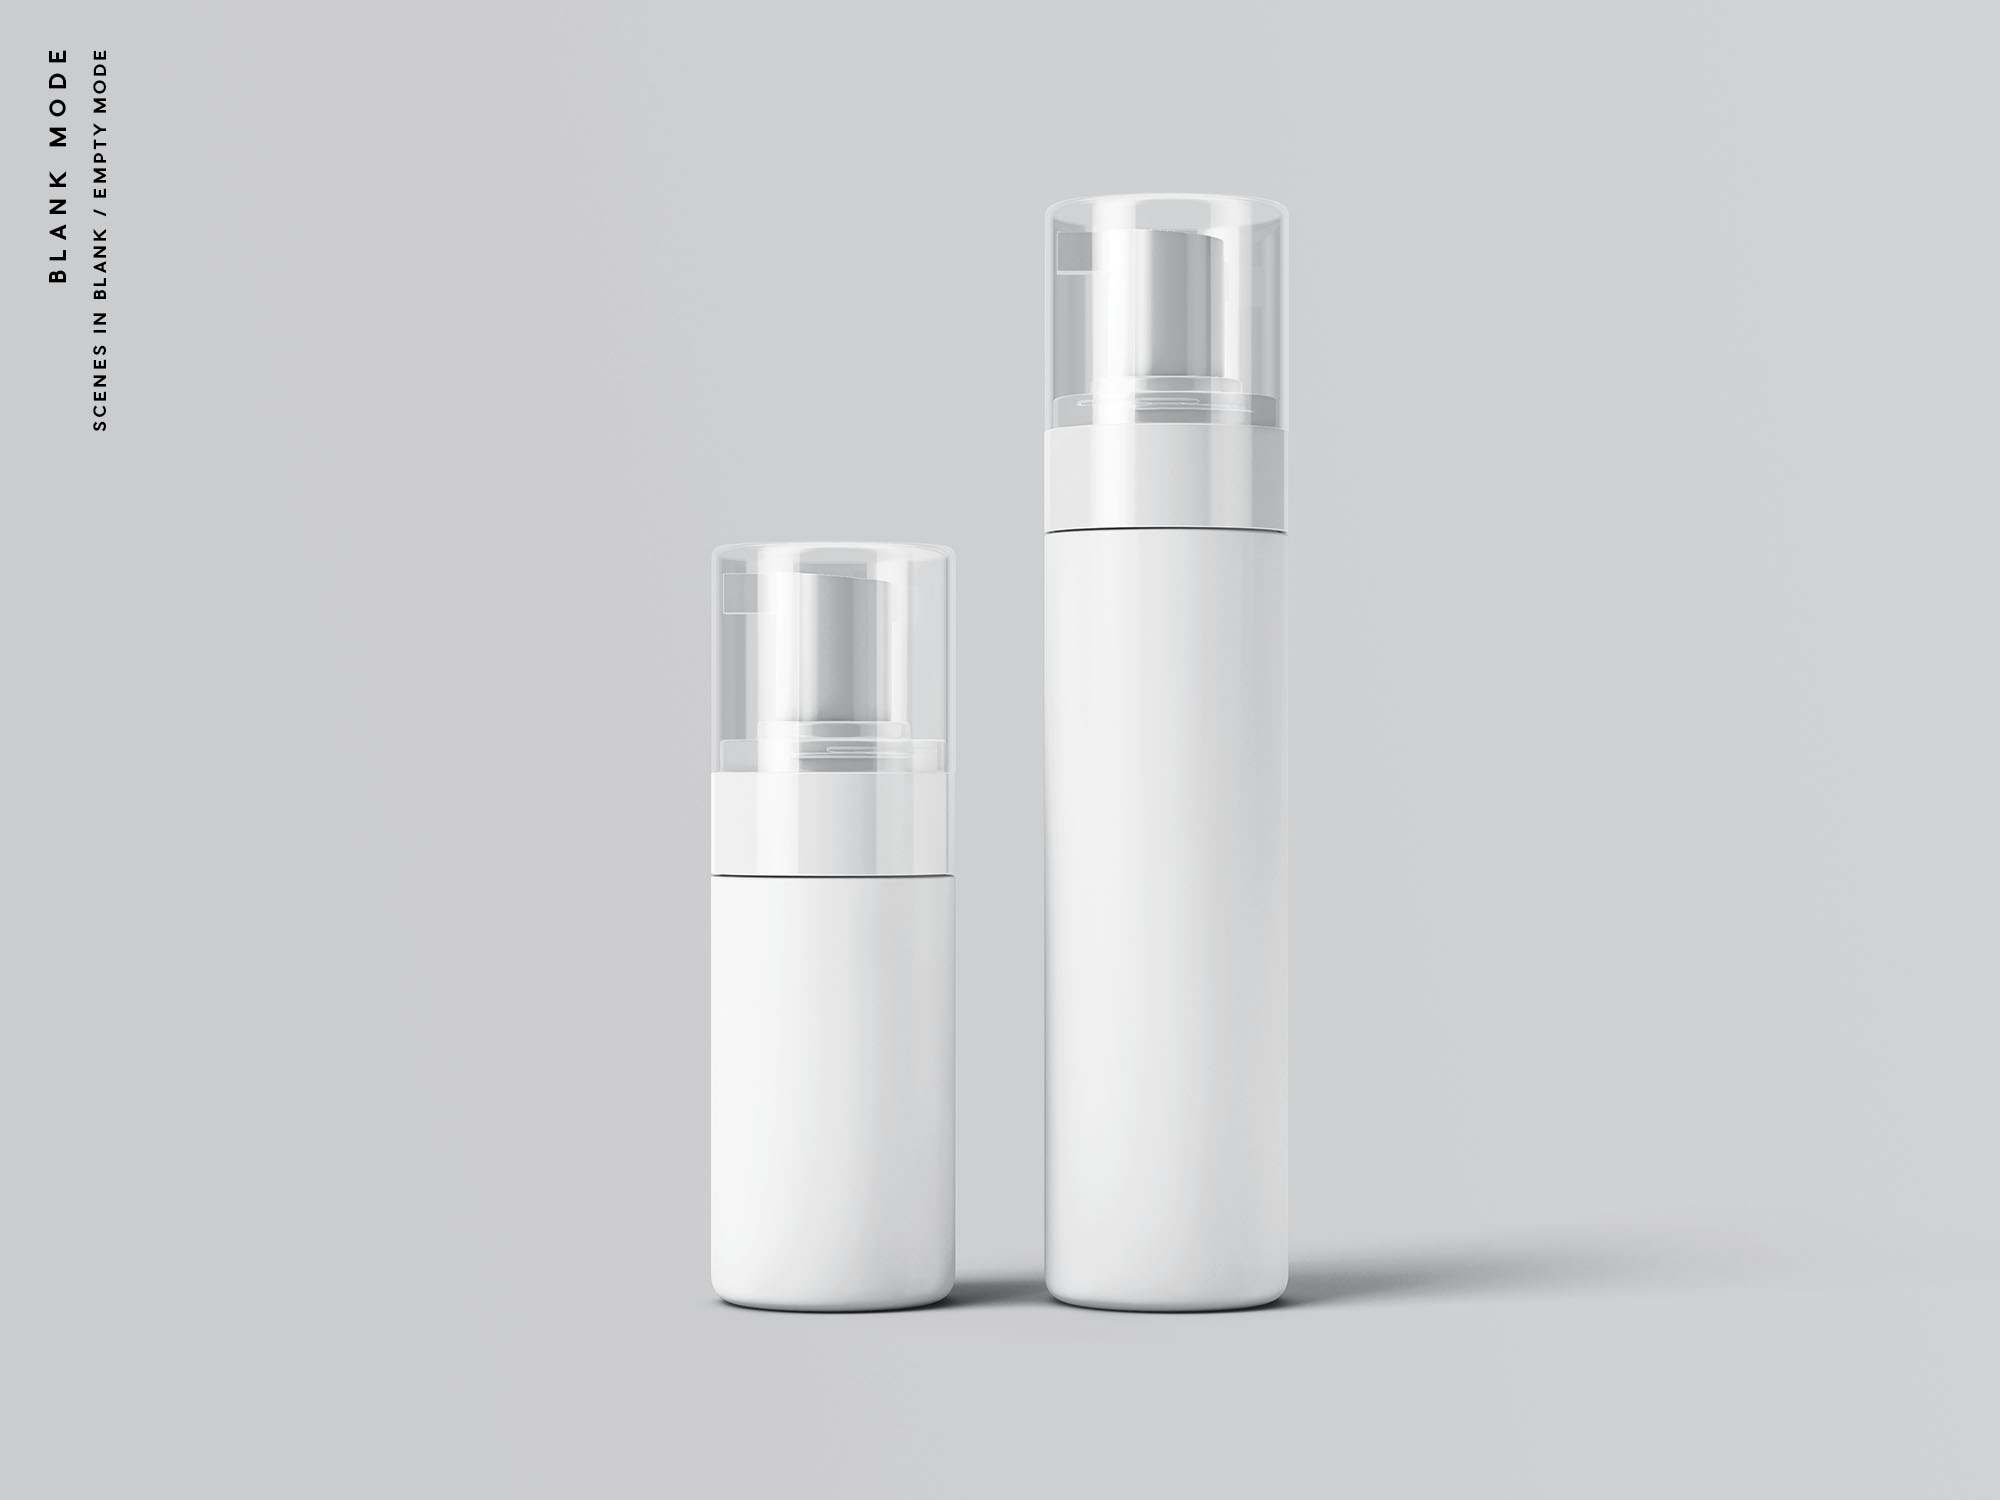 按压式化妆品护肤品瓶外观设计蚂蚁素材精选模板 Cosmetic Bottles Packaging Mockup插图(9)